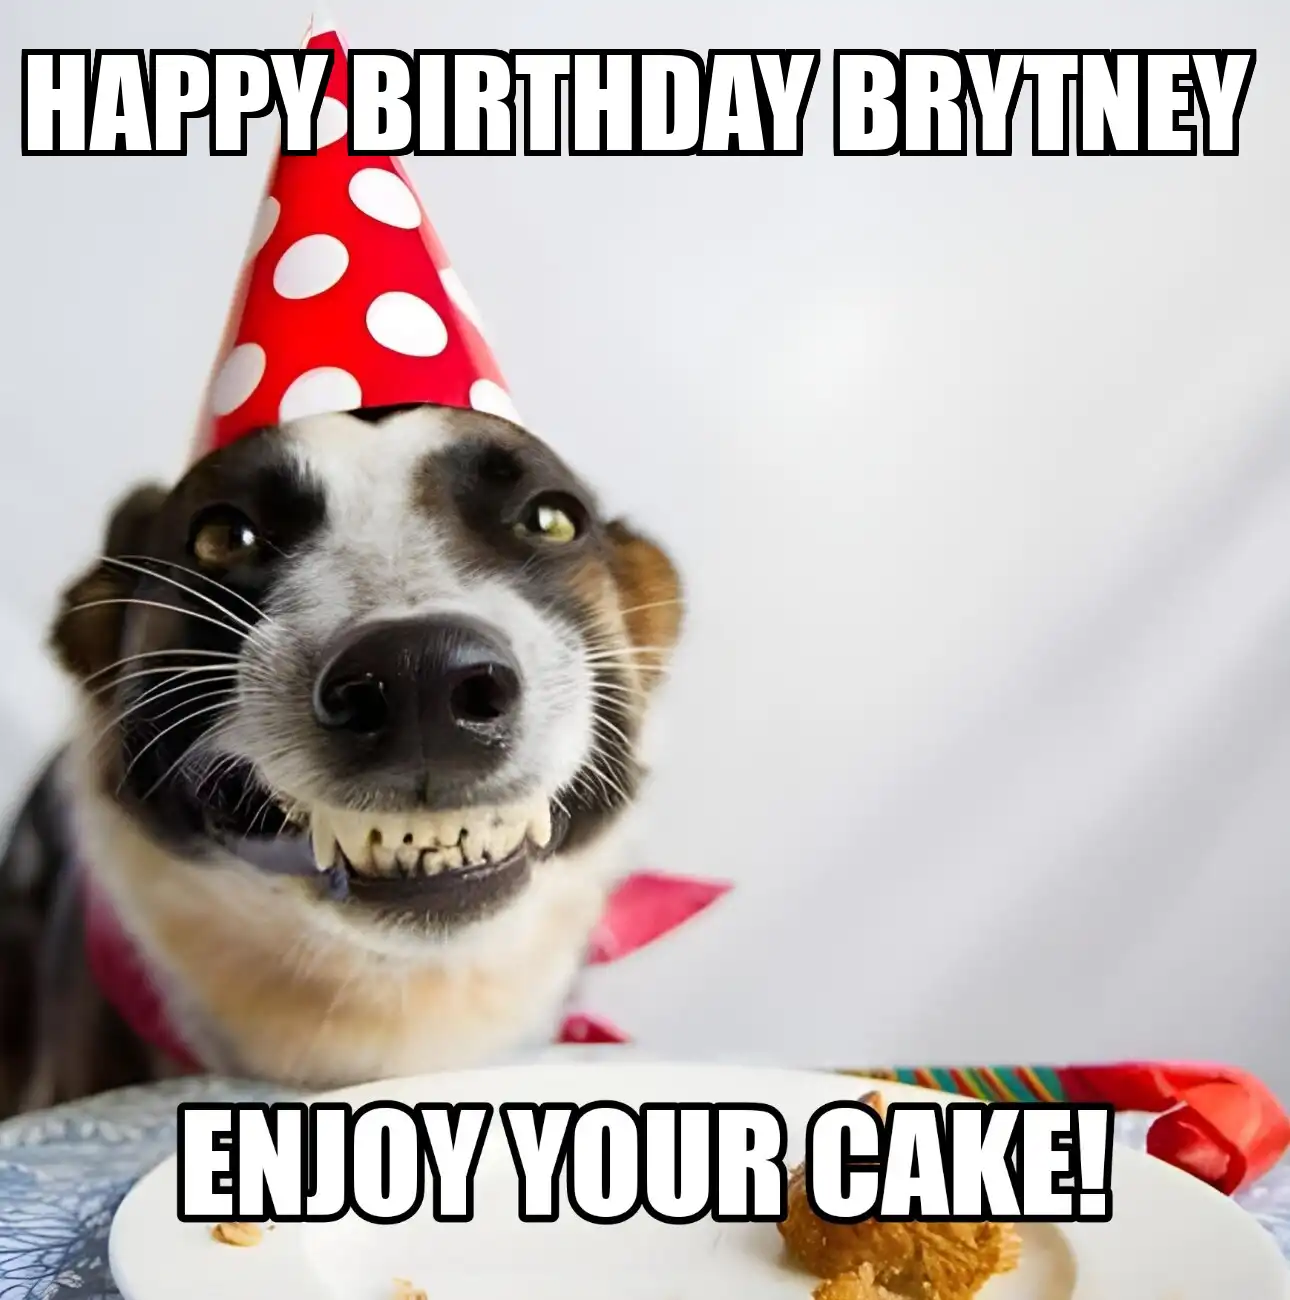 Happy Birthday Brytney Enjoy Your Cake Dog Meme